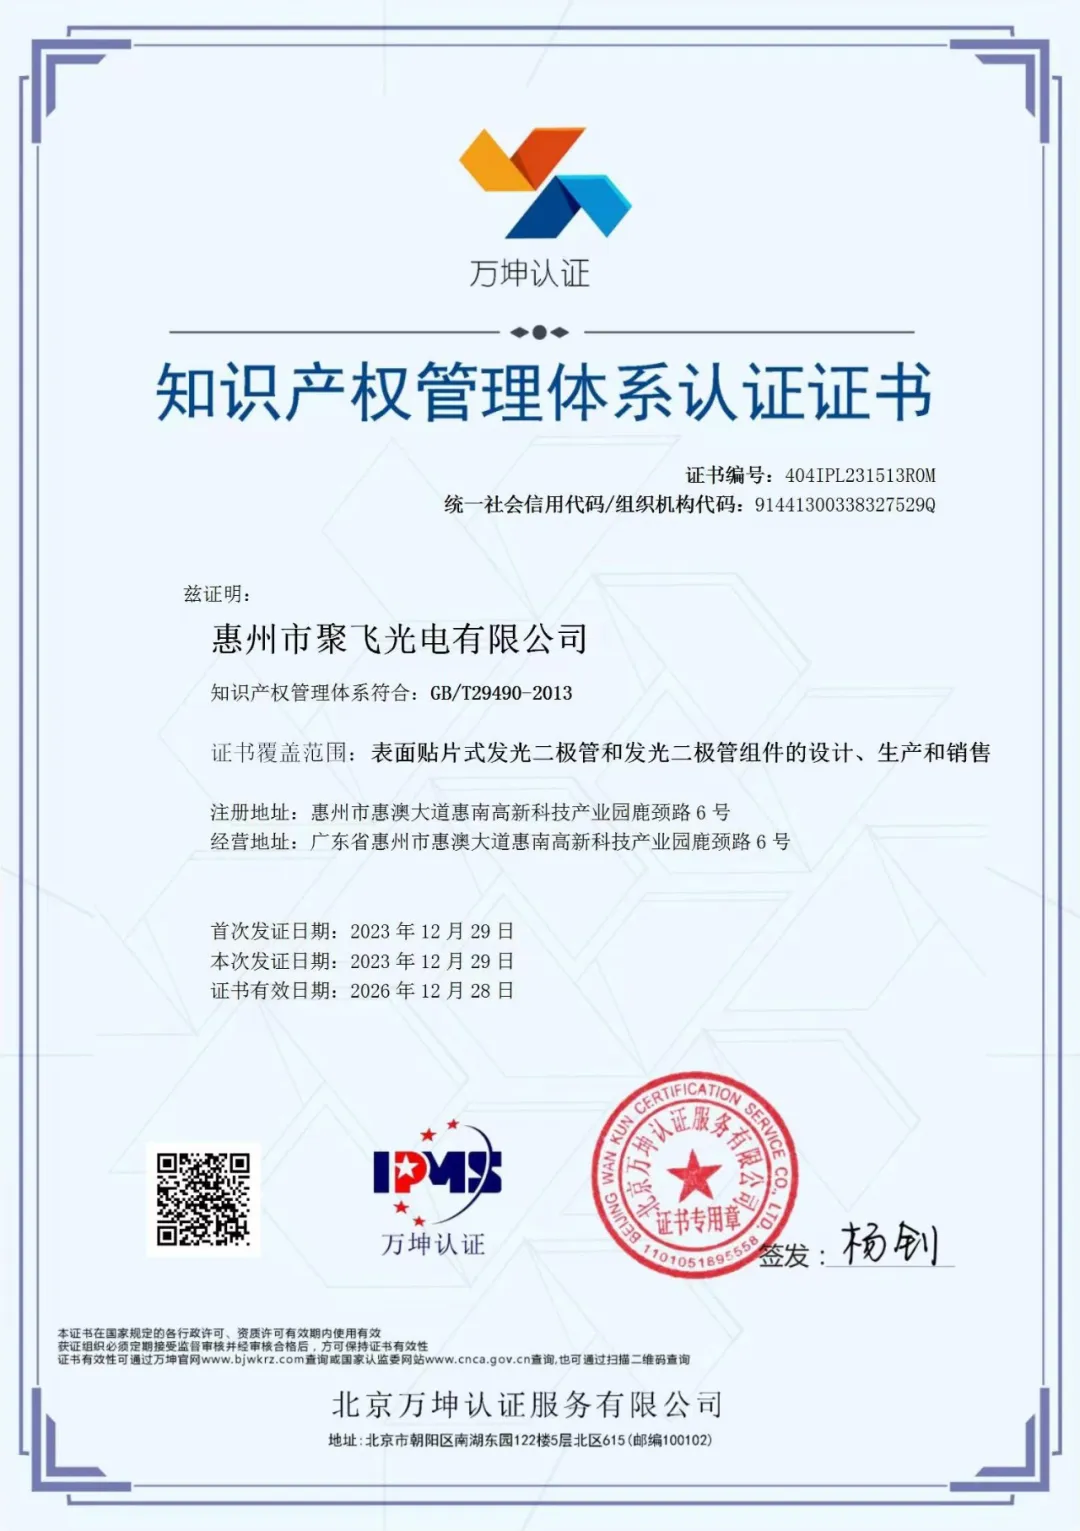 惠州金沙8888js官方通过企业知识产权管理规范认证